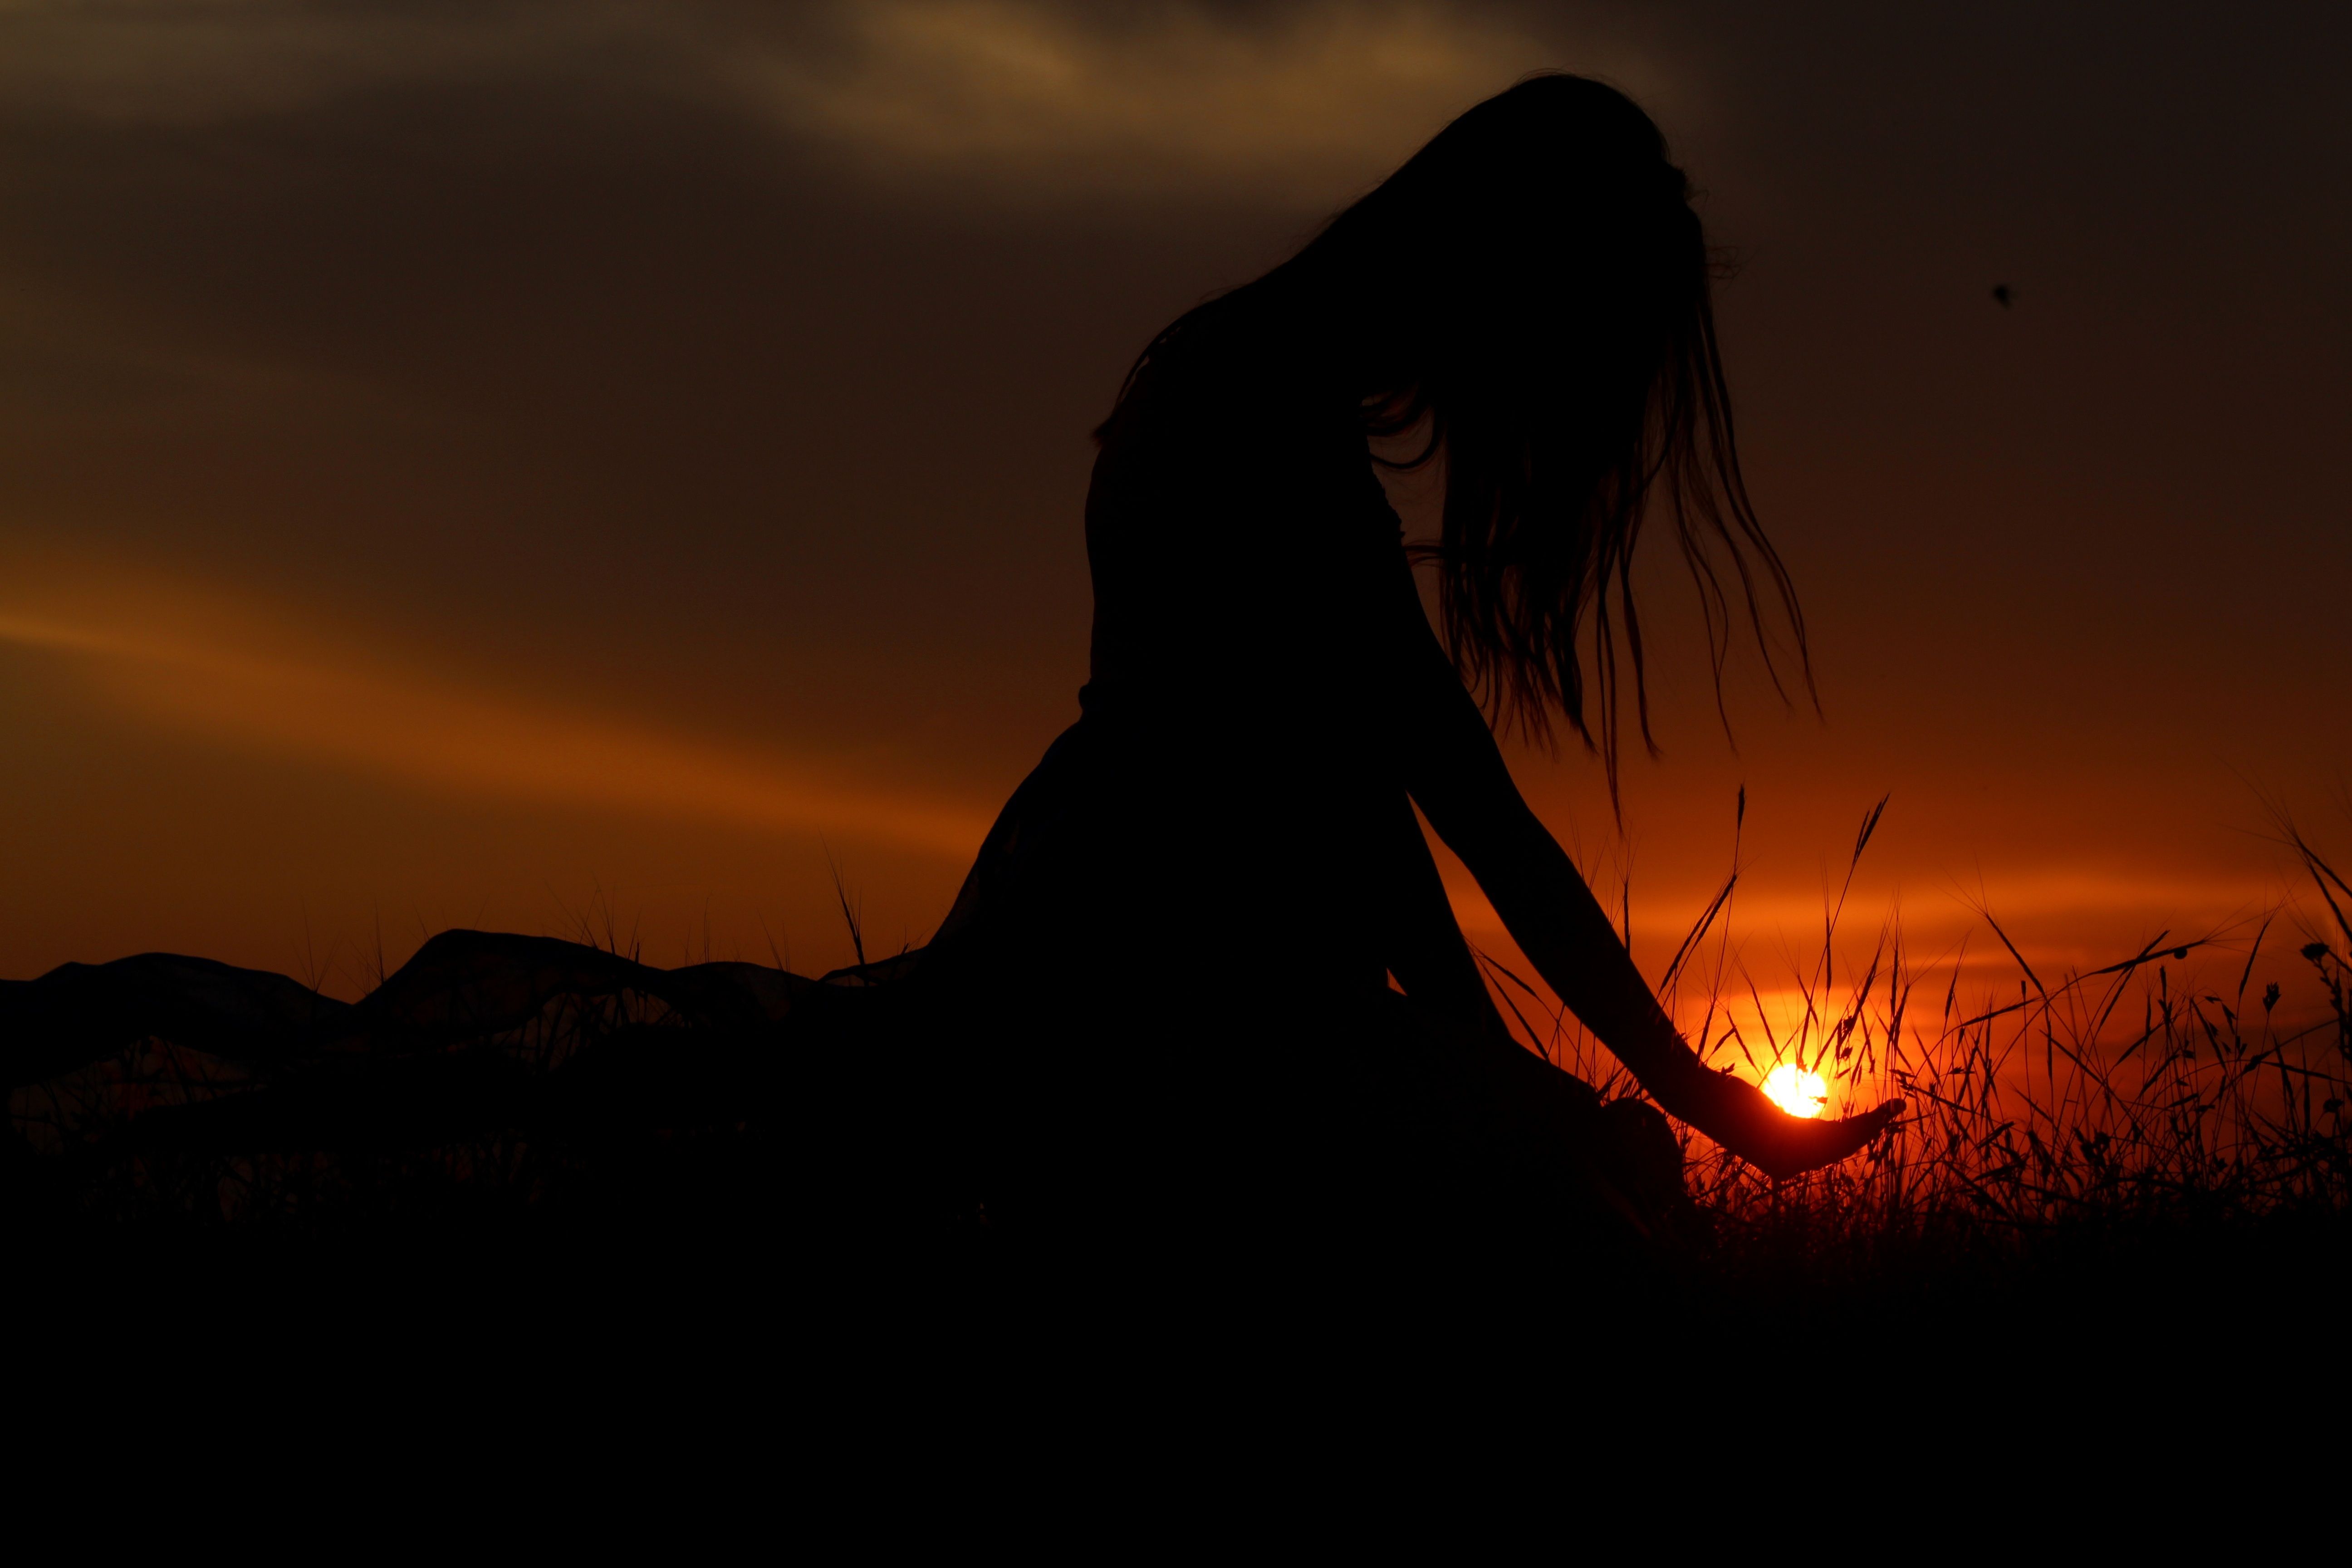 #Alone, K, #Woman, #Sunset